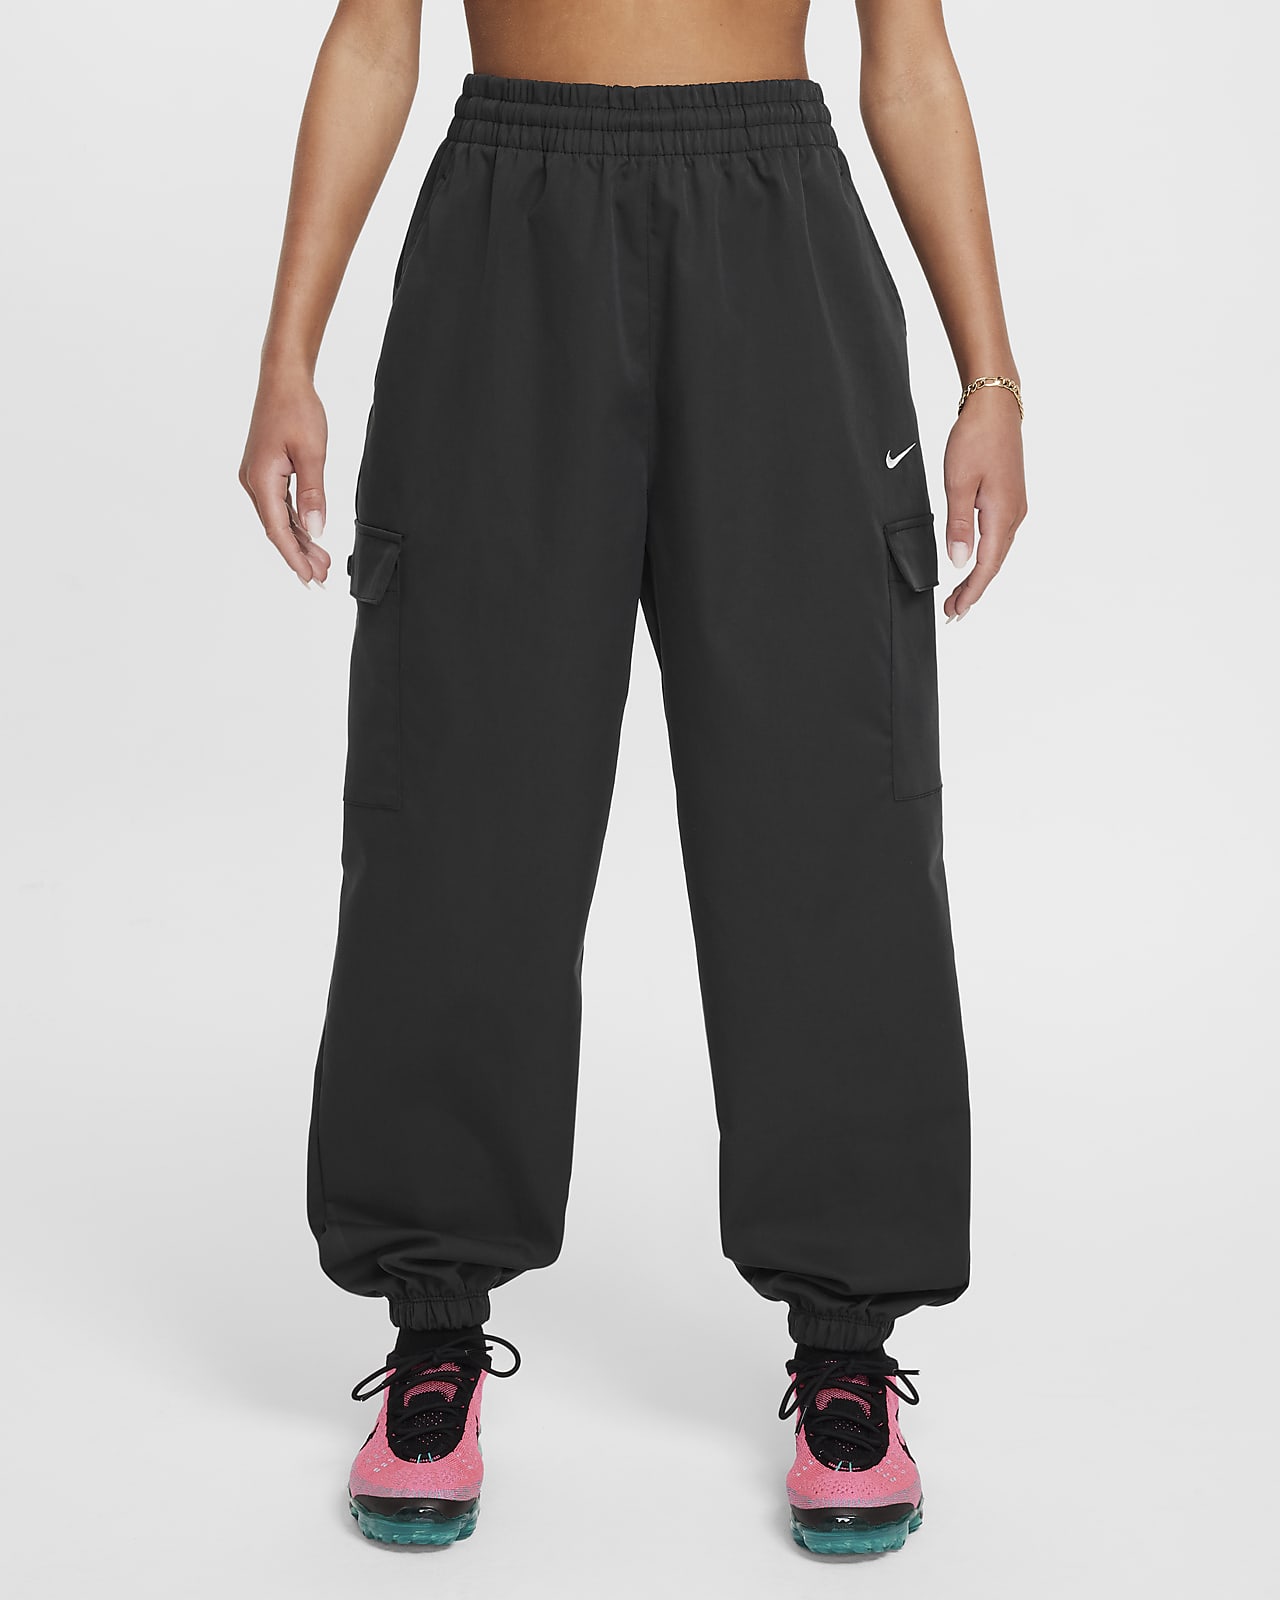 Nike Sportswear Girls' Cargo Pants